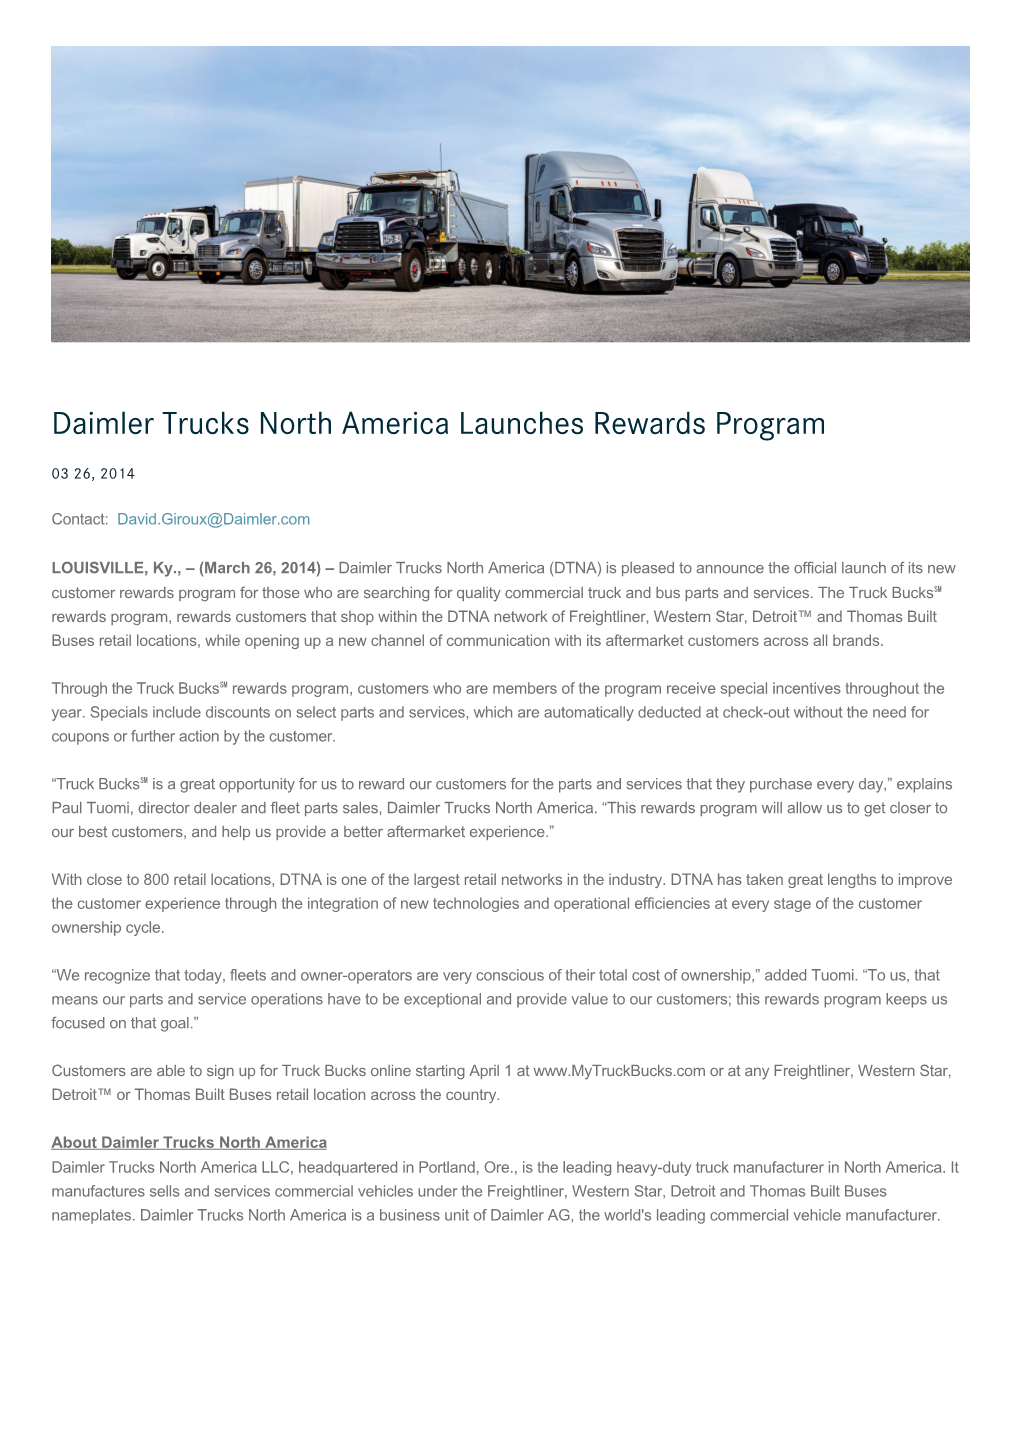 Daimler Truck North America Launche Reward Program